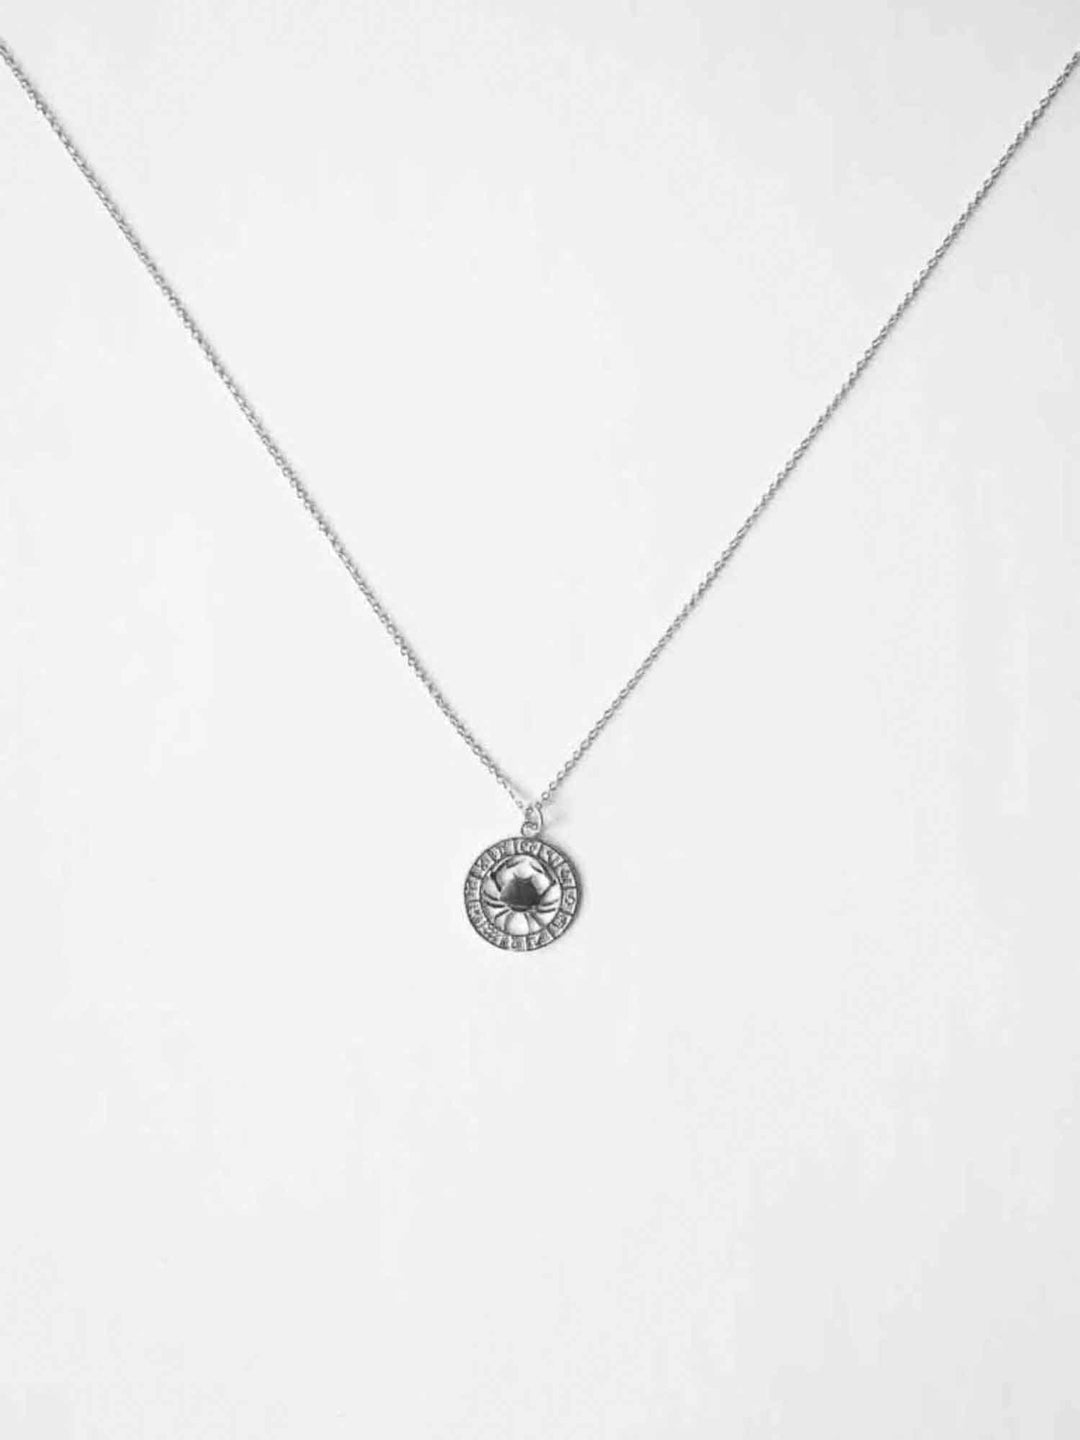 Sternzeichen des Monats - Schütze Necklace (waterproof)